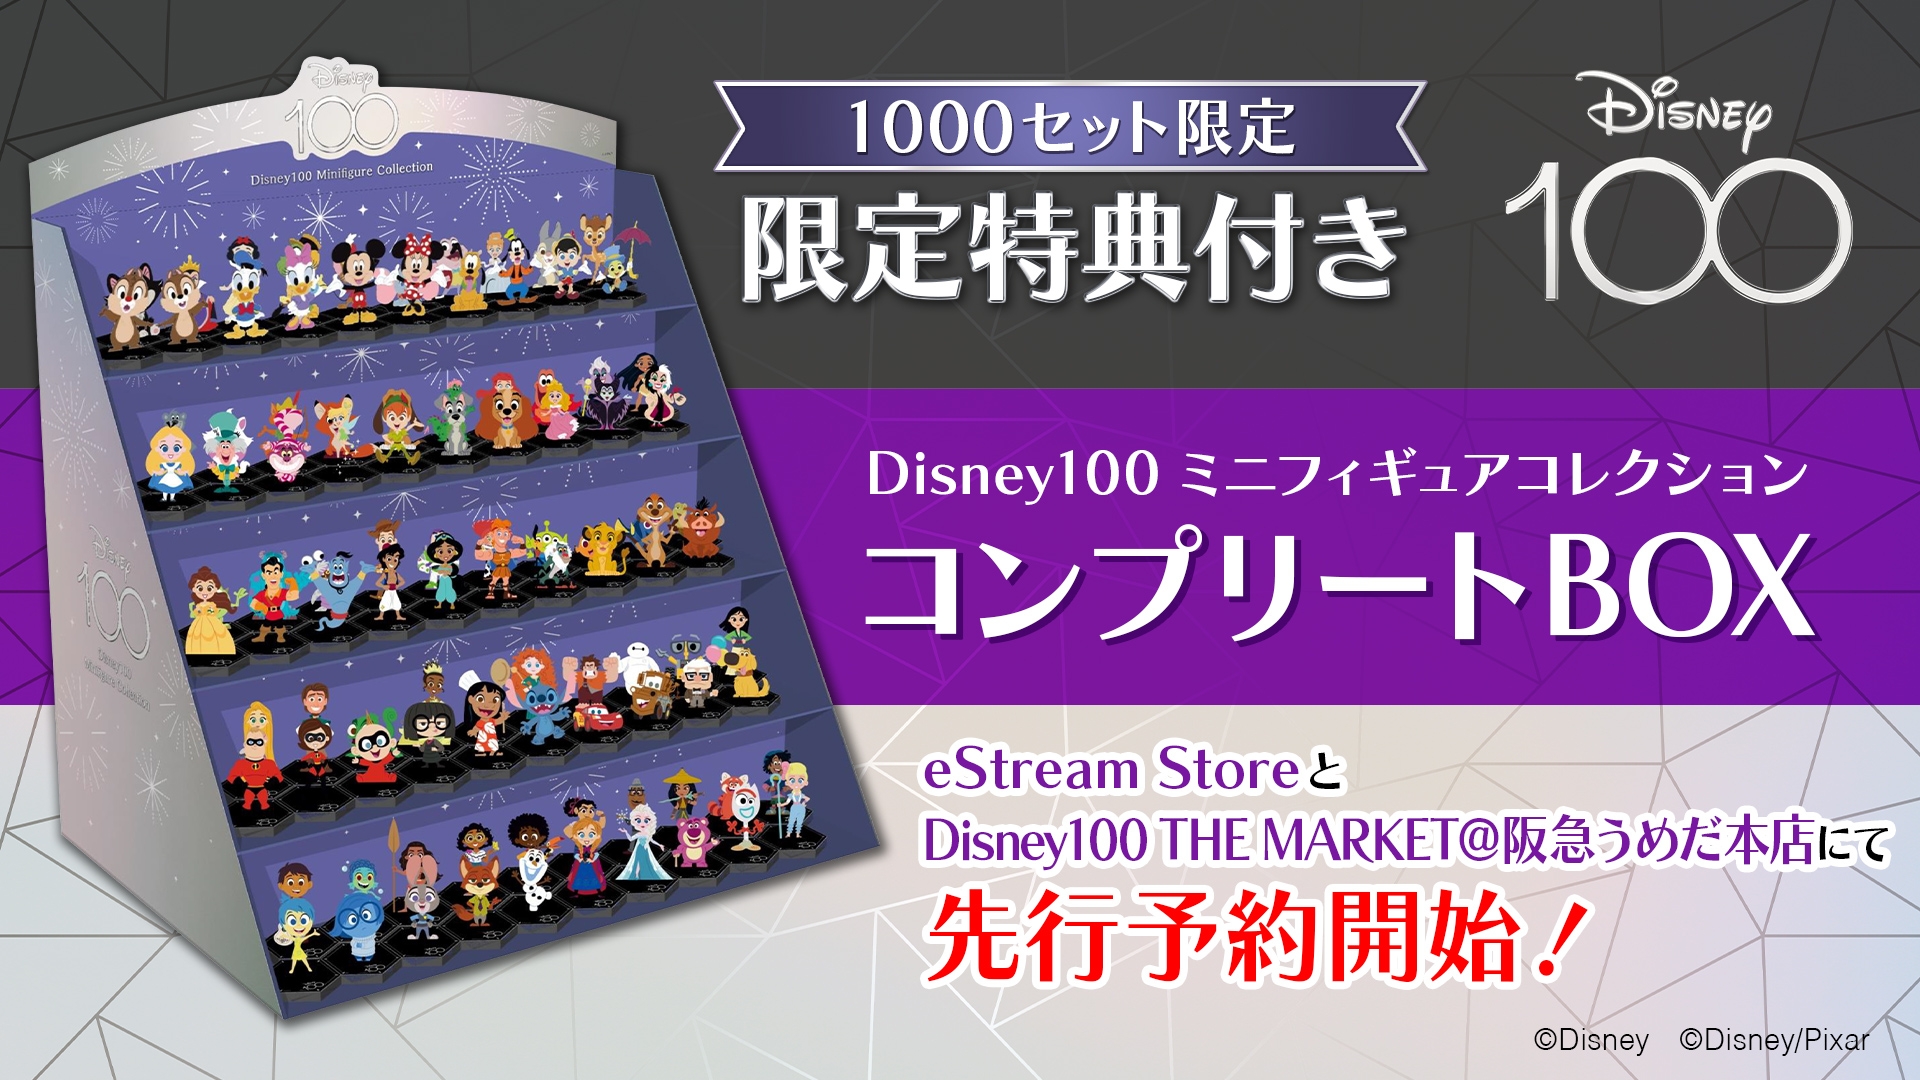 ディズニー100周年を記念した「Disney100 ミニフィギュアコレクション